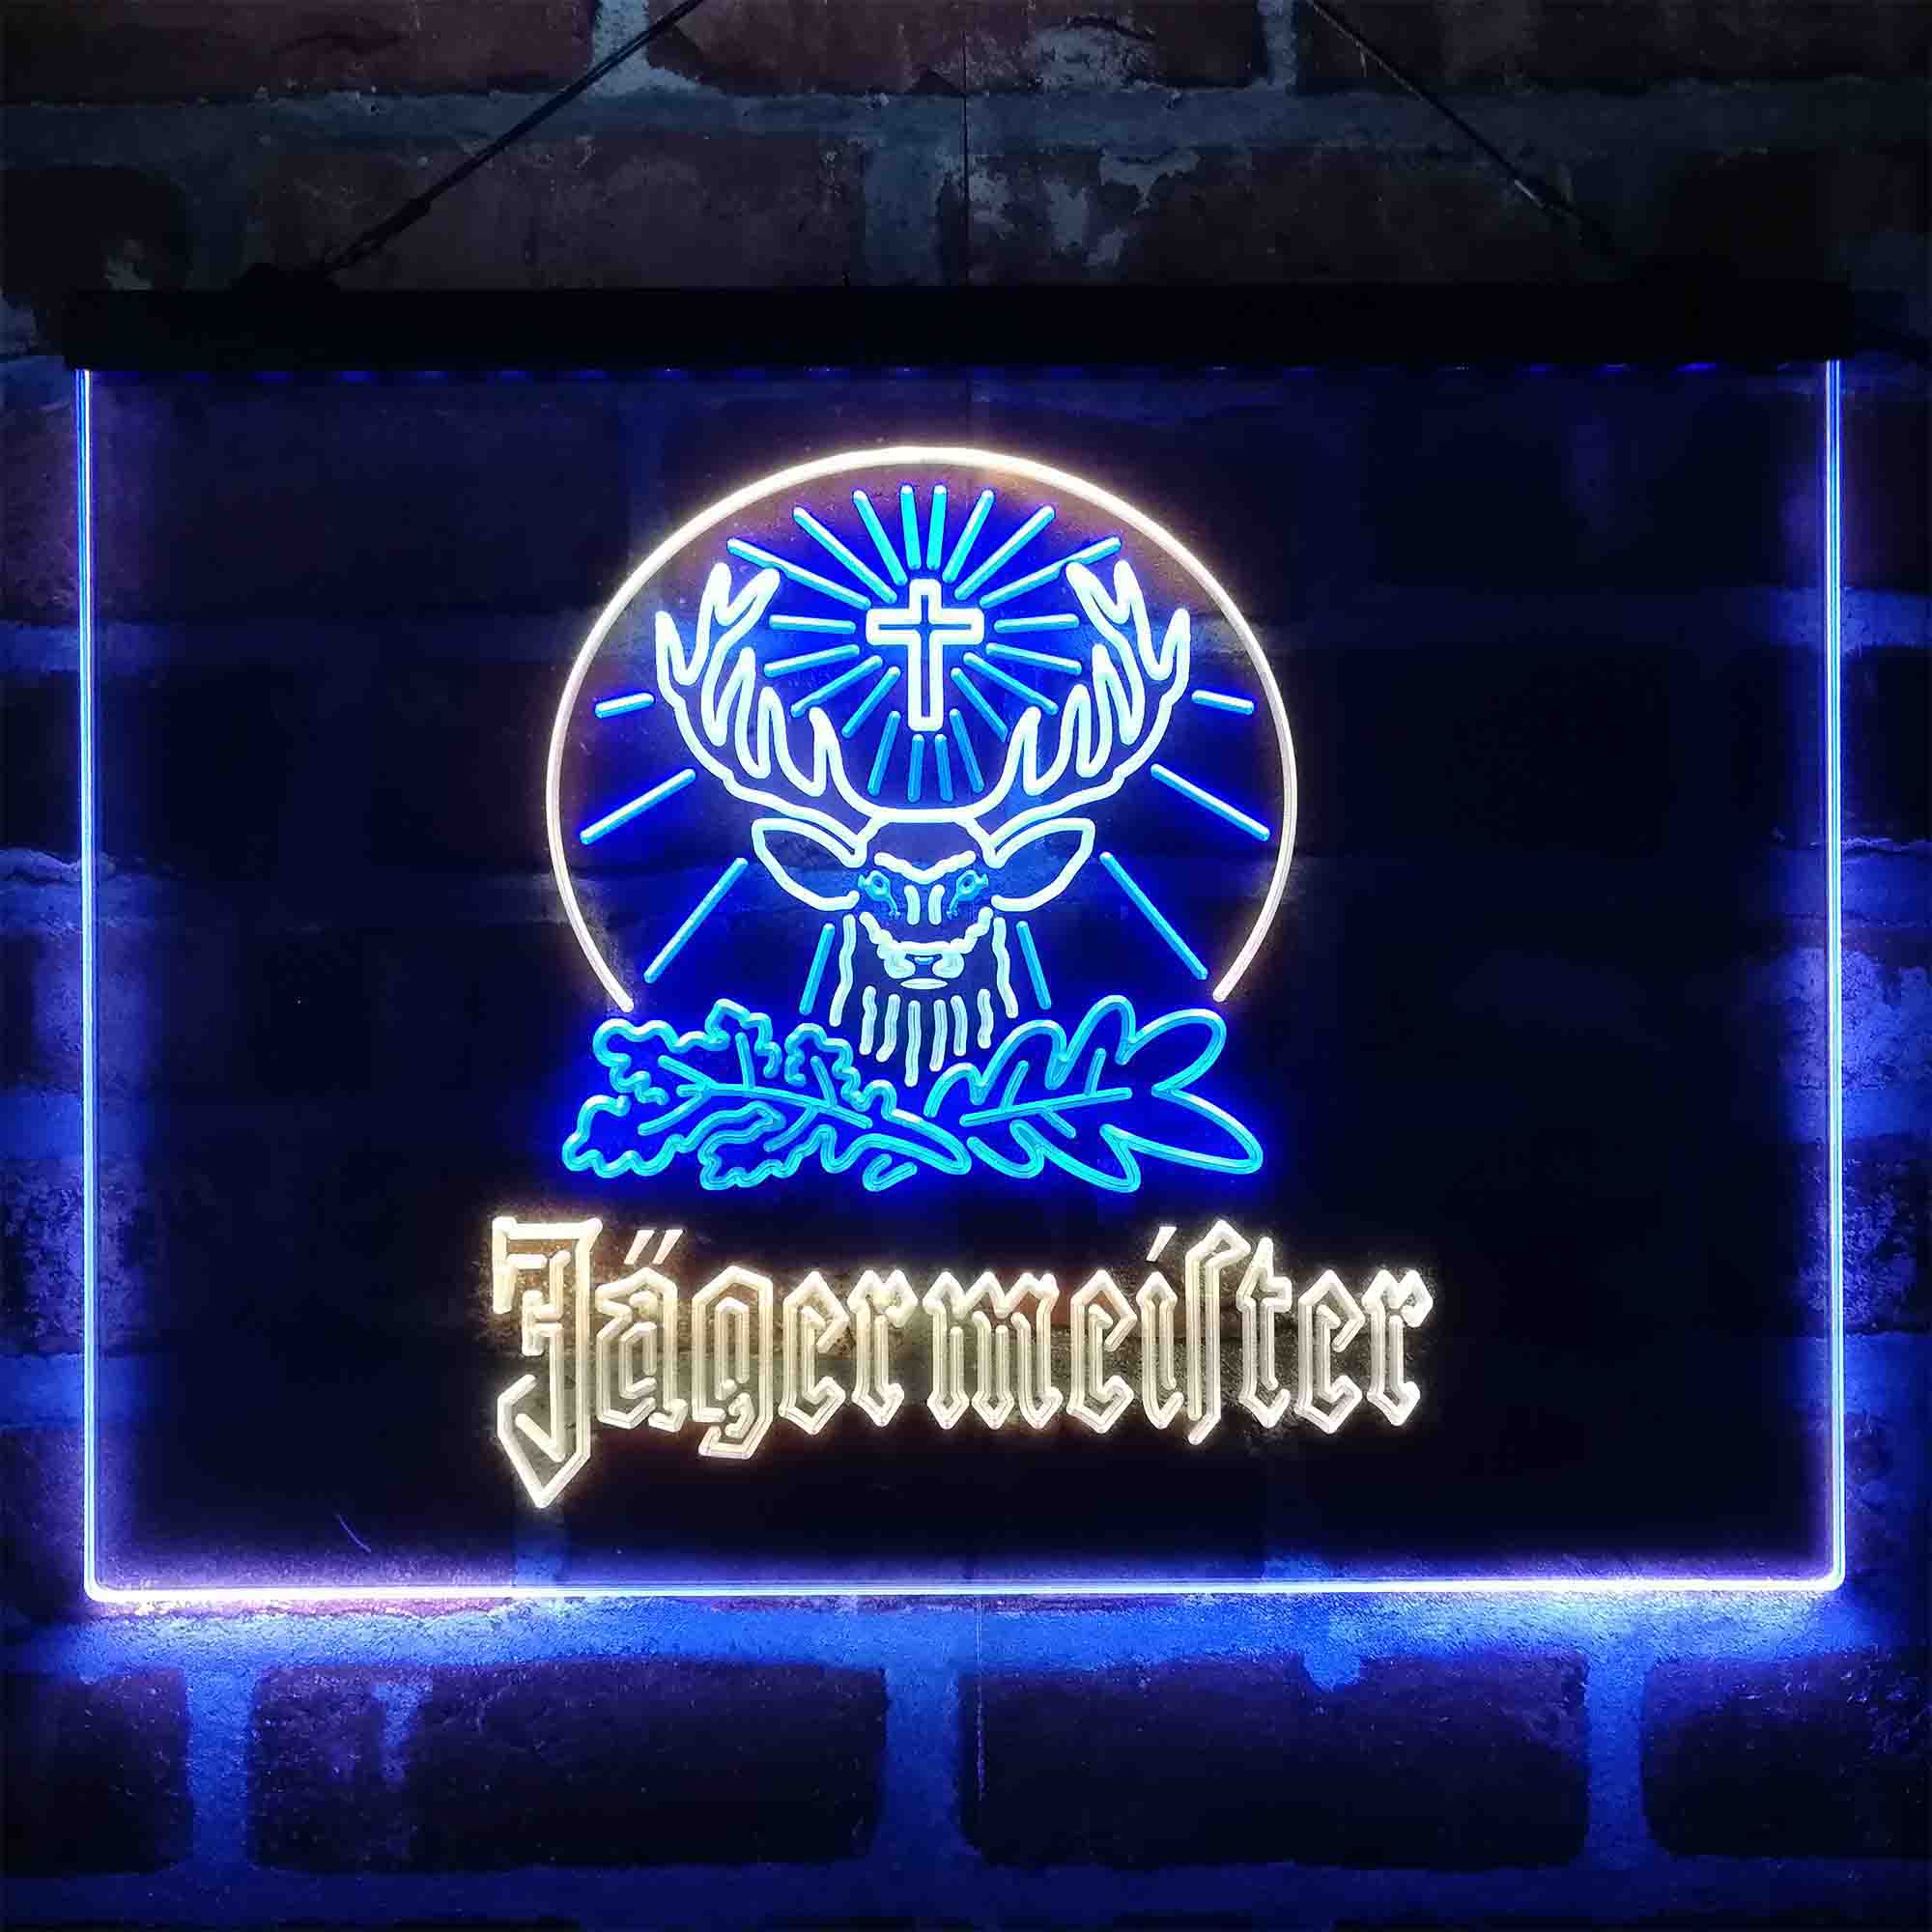 Jagermeister Wine Neon-Like LED Sign